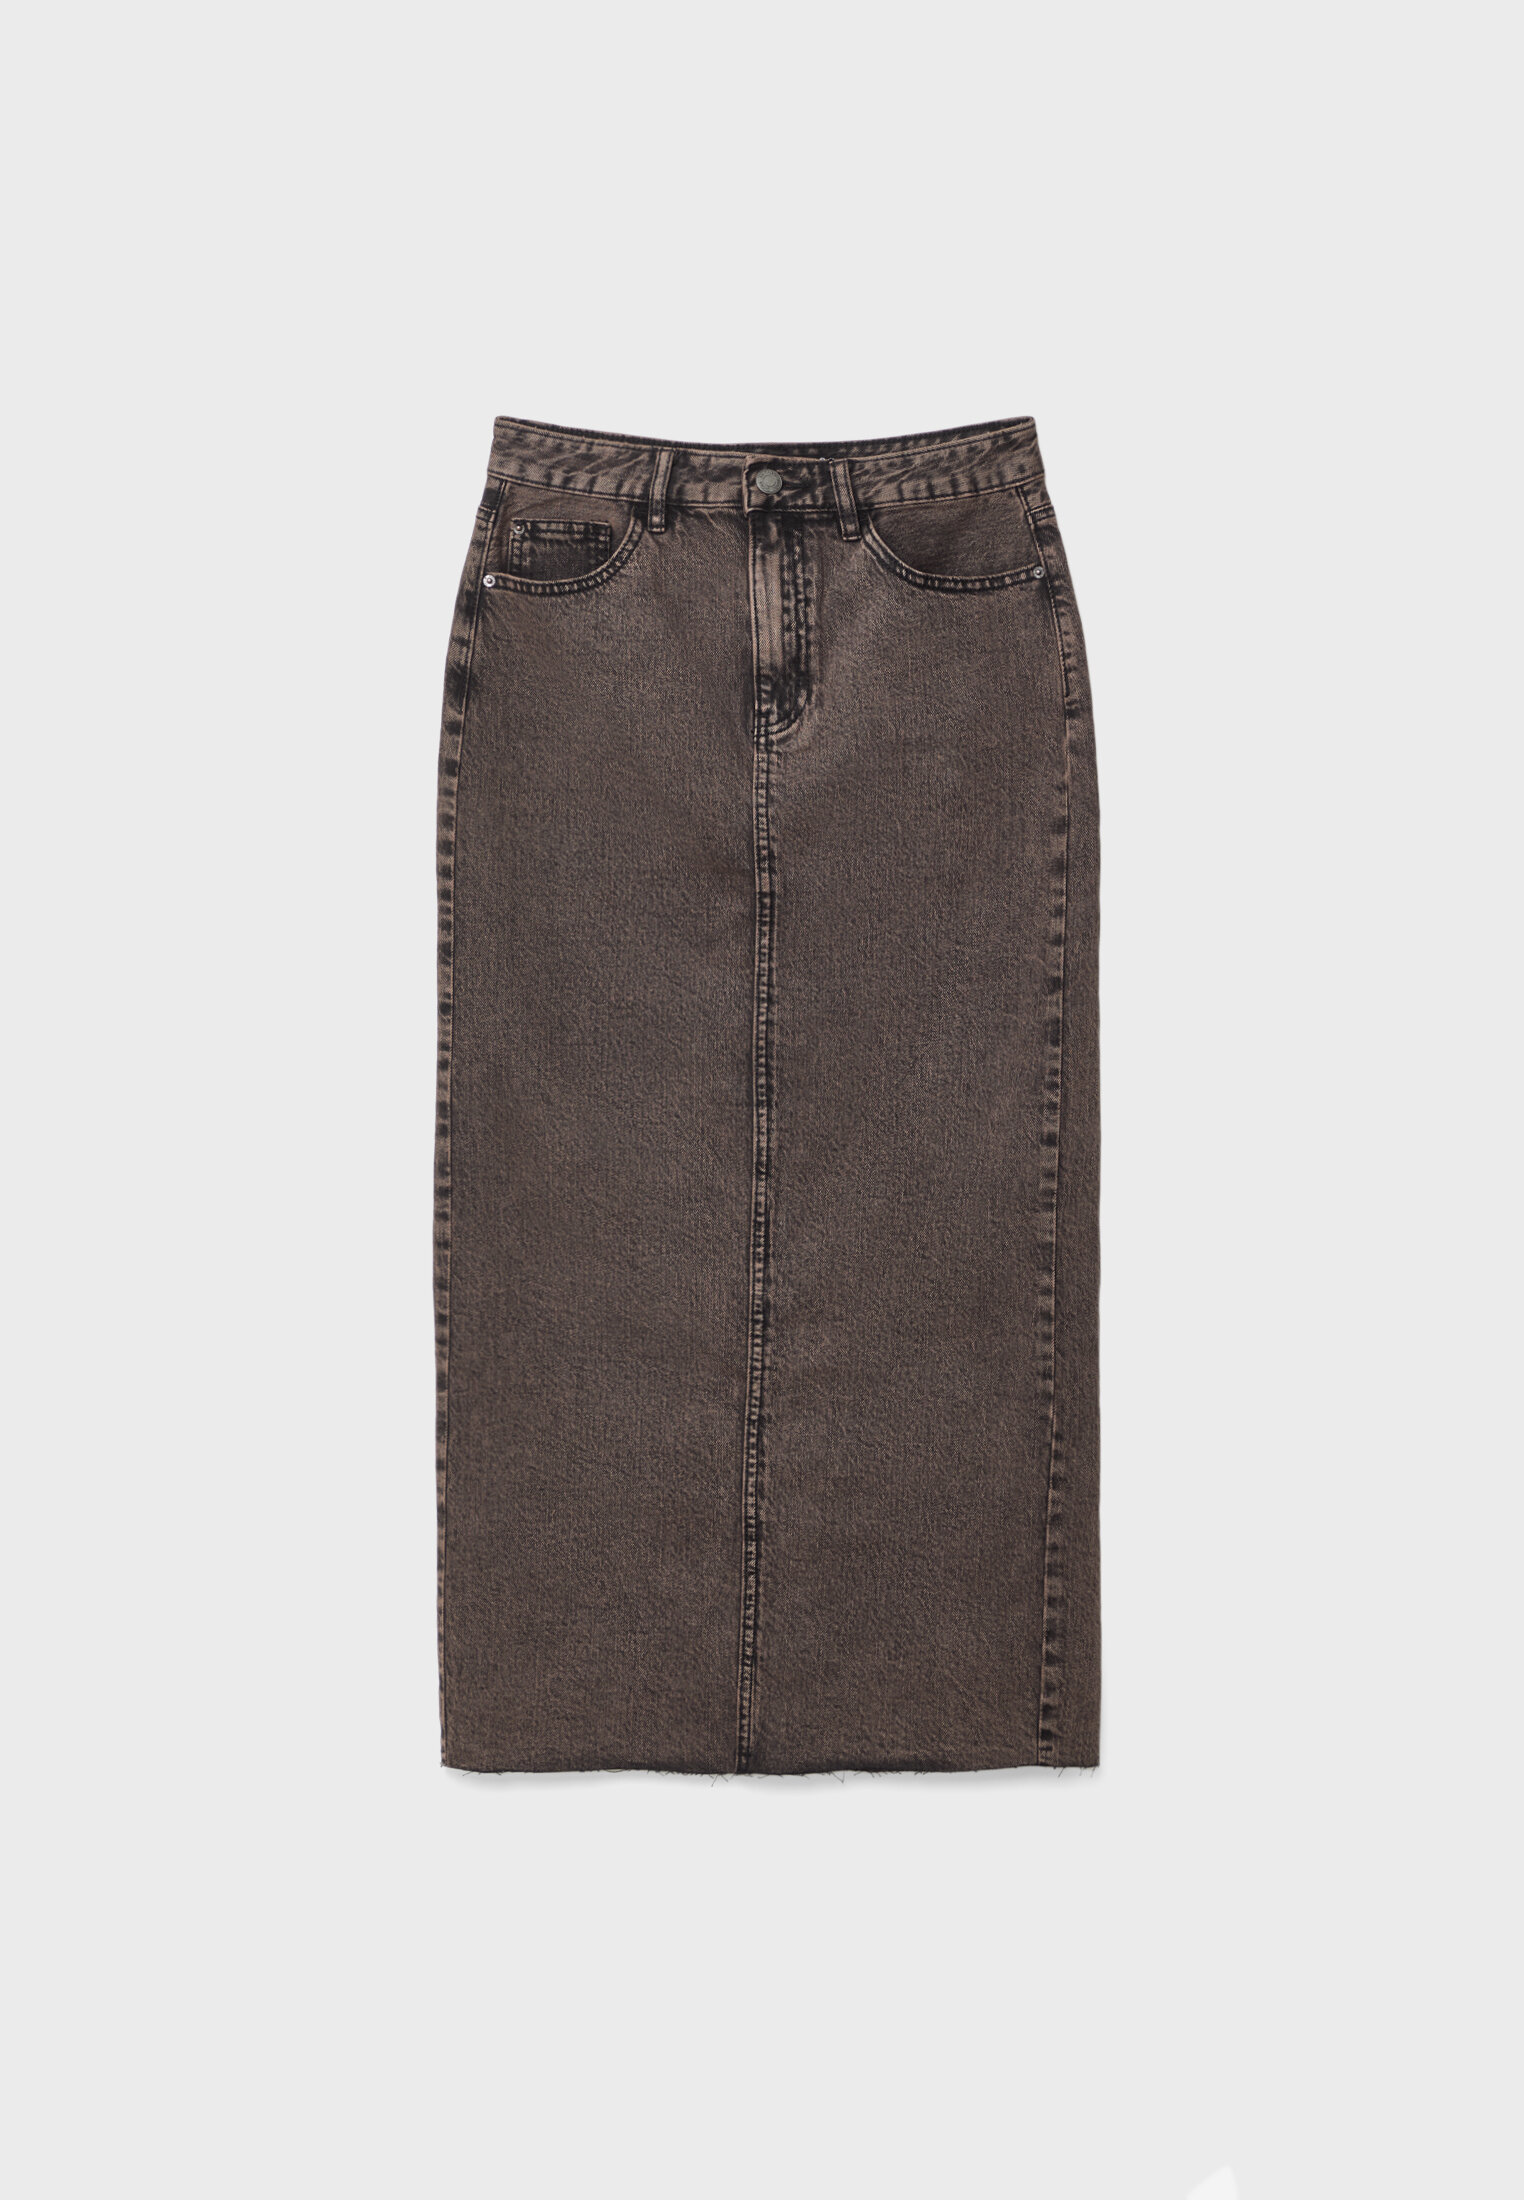 販売ショッピング meltthelady denim4 over dyed skirt pants